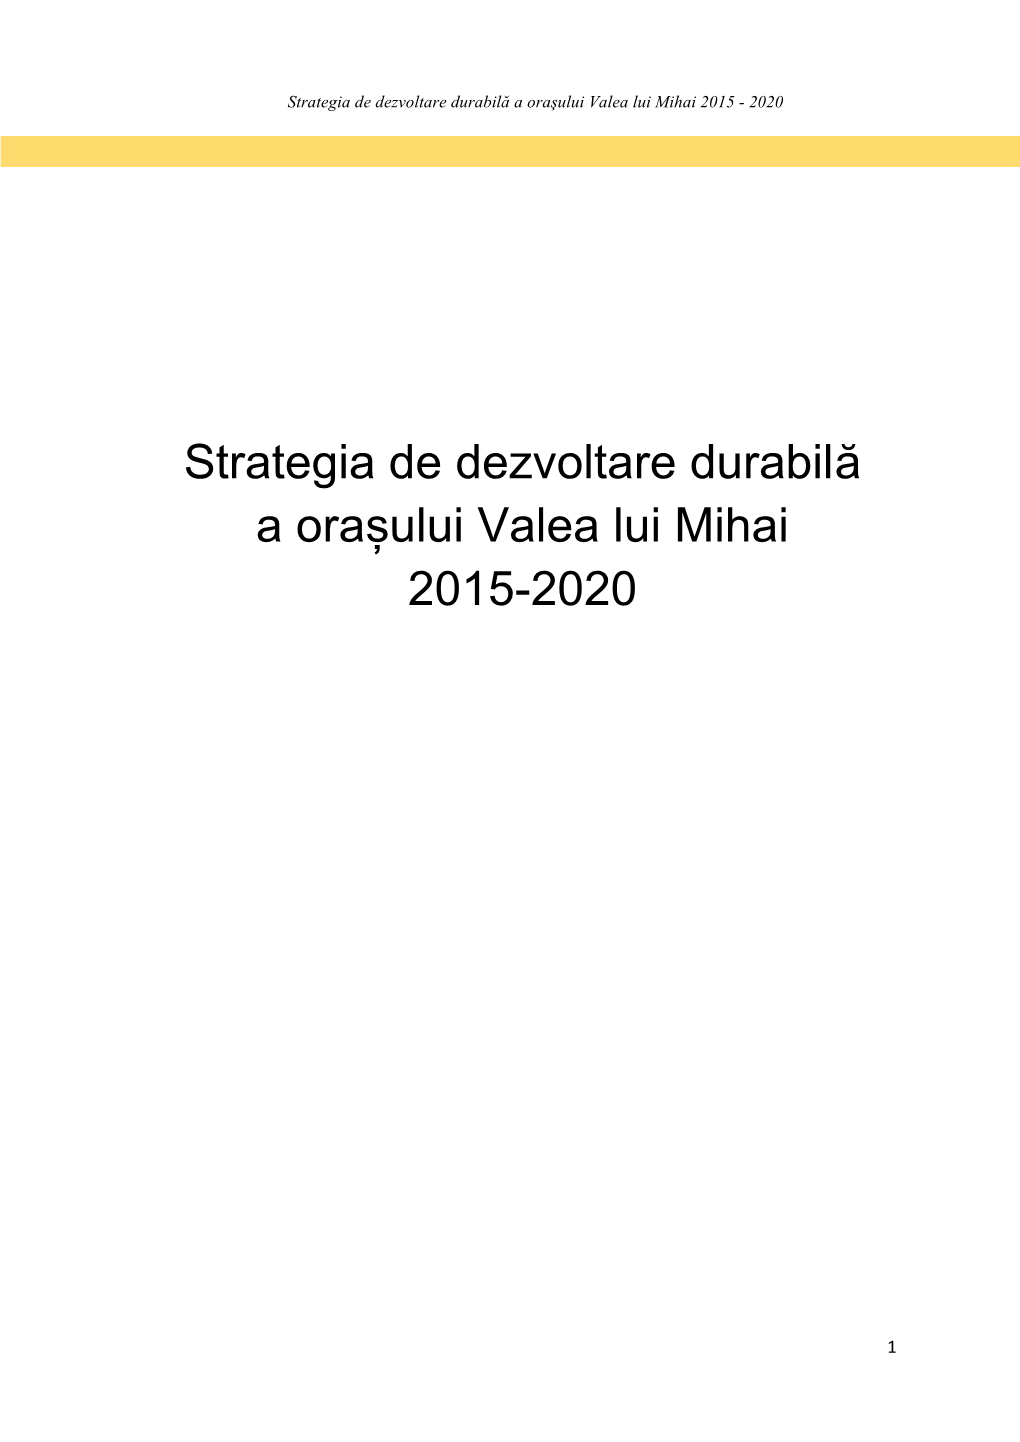 Strategia De Dezvoltare Durabilă a Orașului Valea Lui Mihai 2015-2020